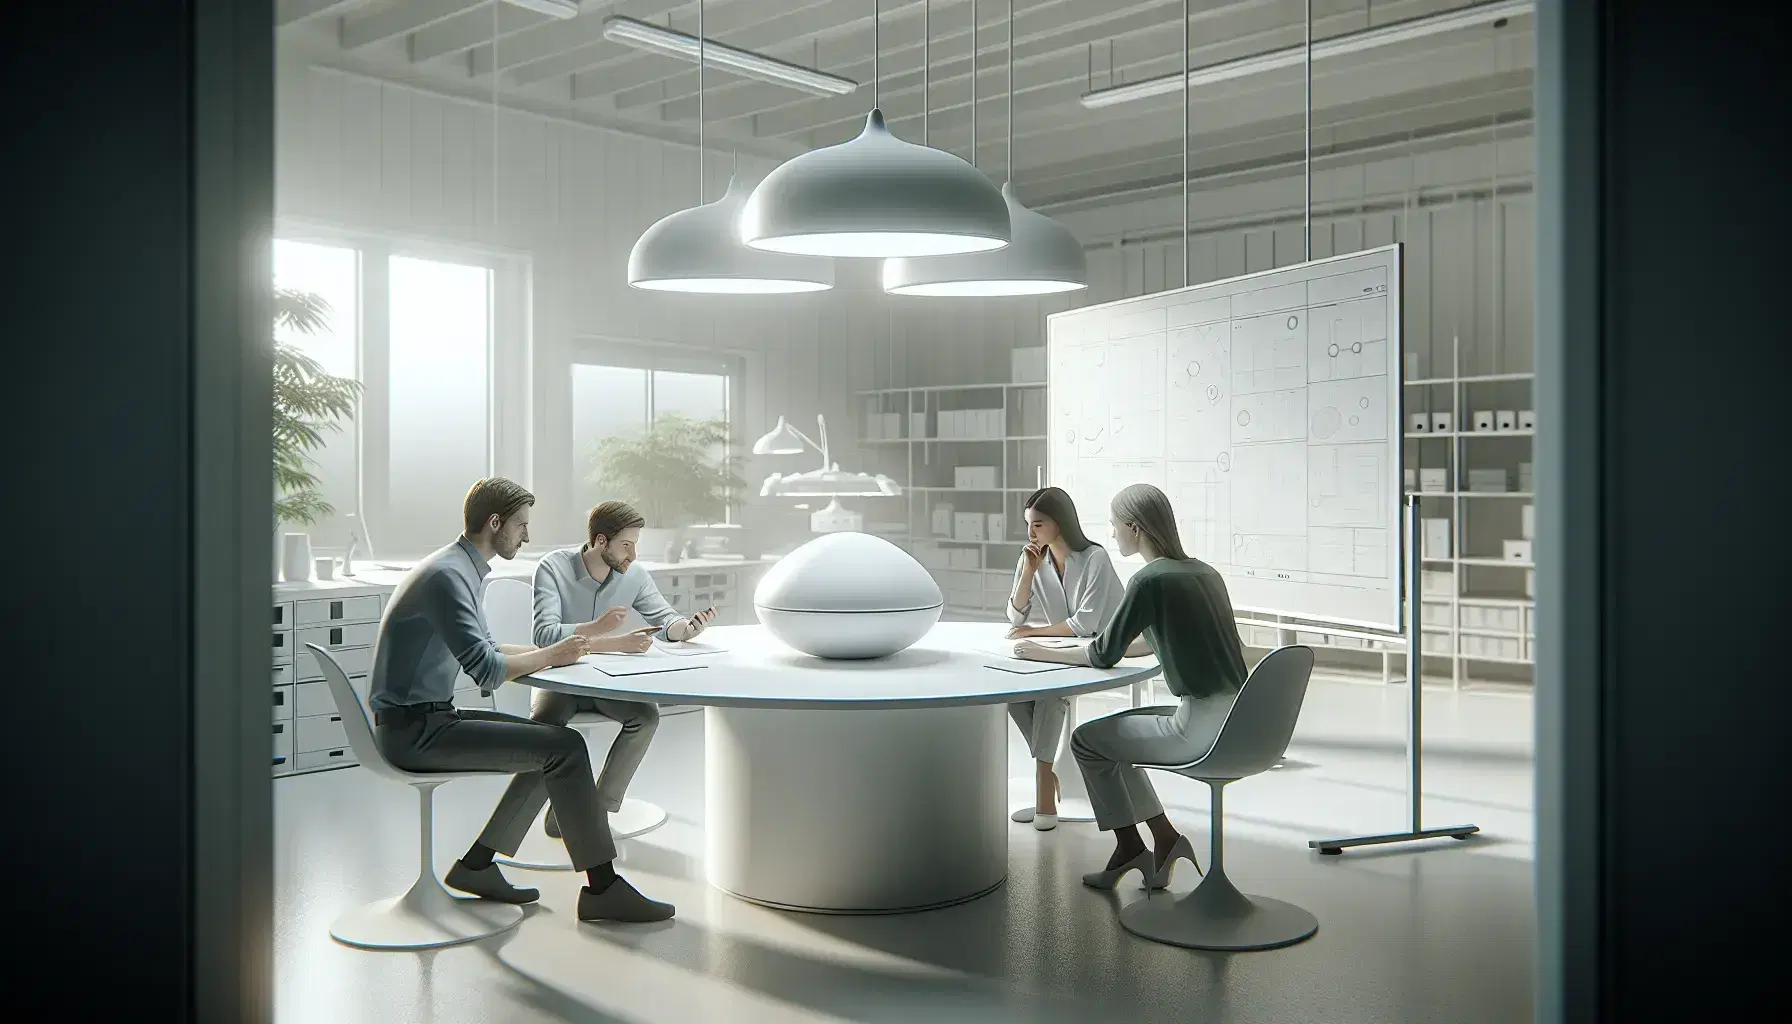 Equipo de profesionales colaborando en torno a una mesa redonda con un prototipo de diseño industrial en una oficina iluminada y organizada.